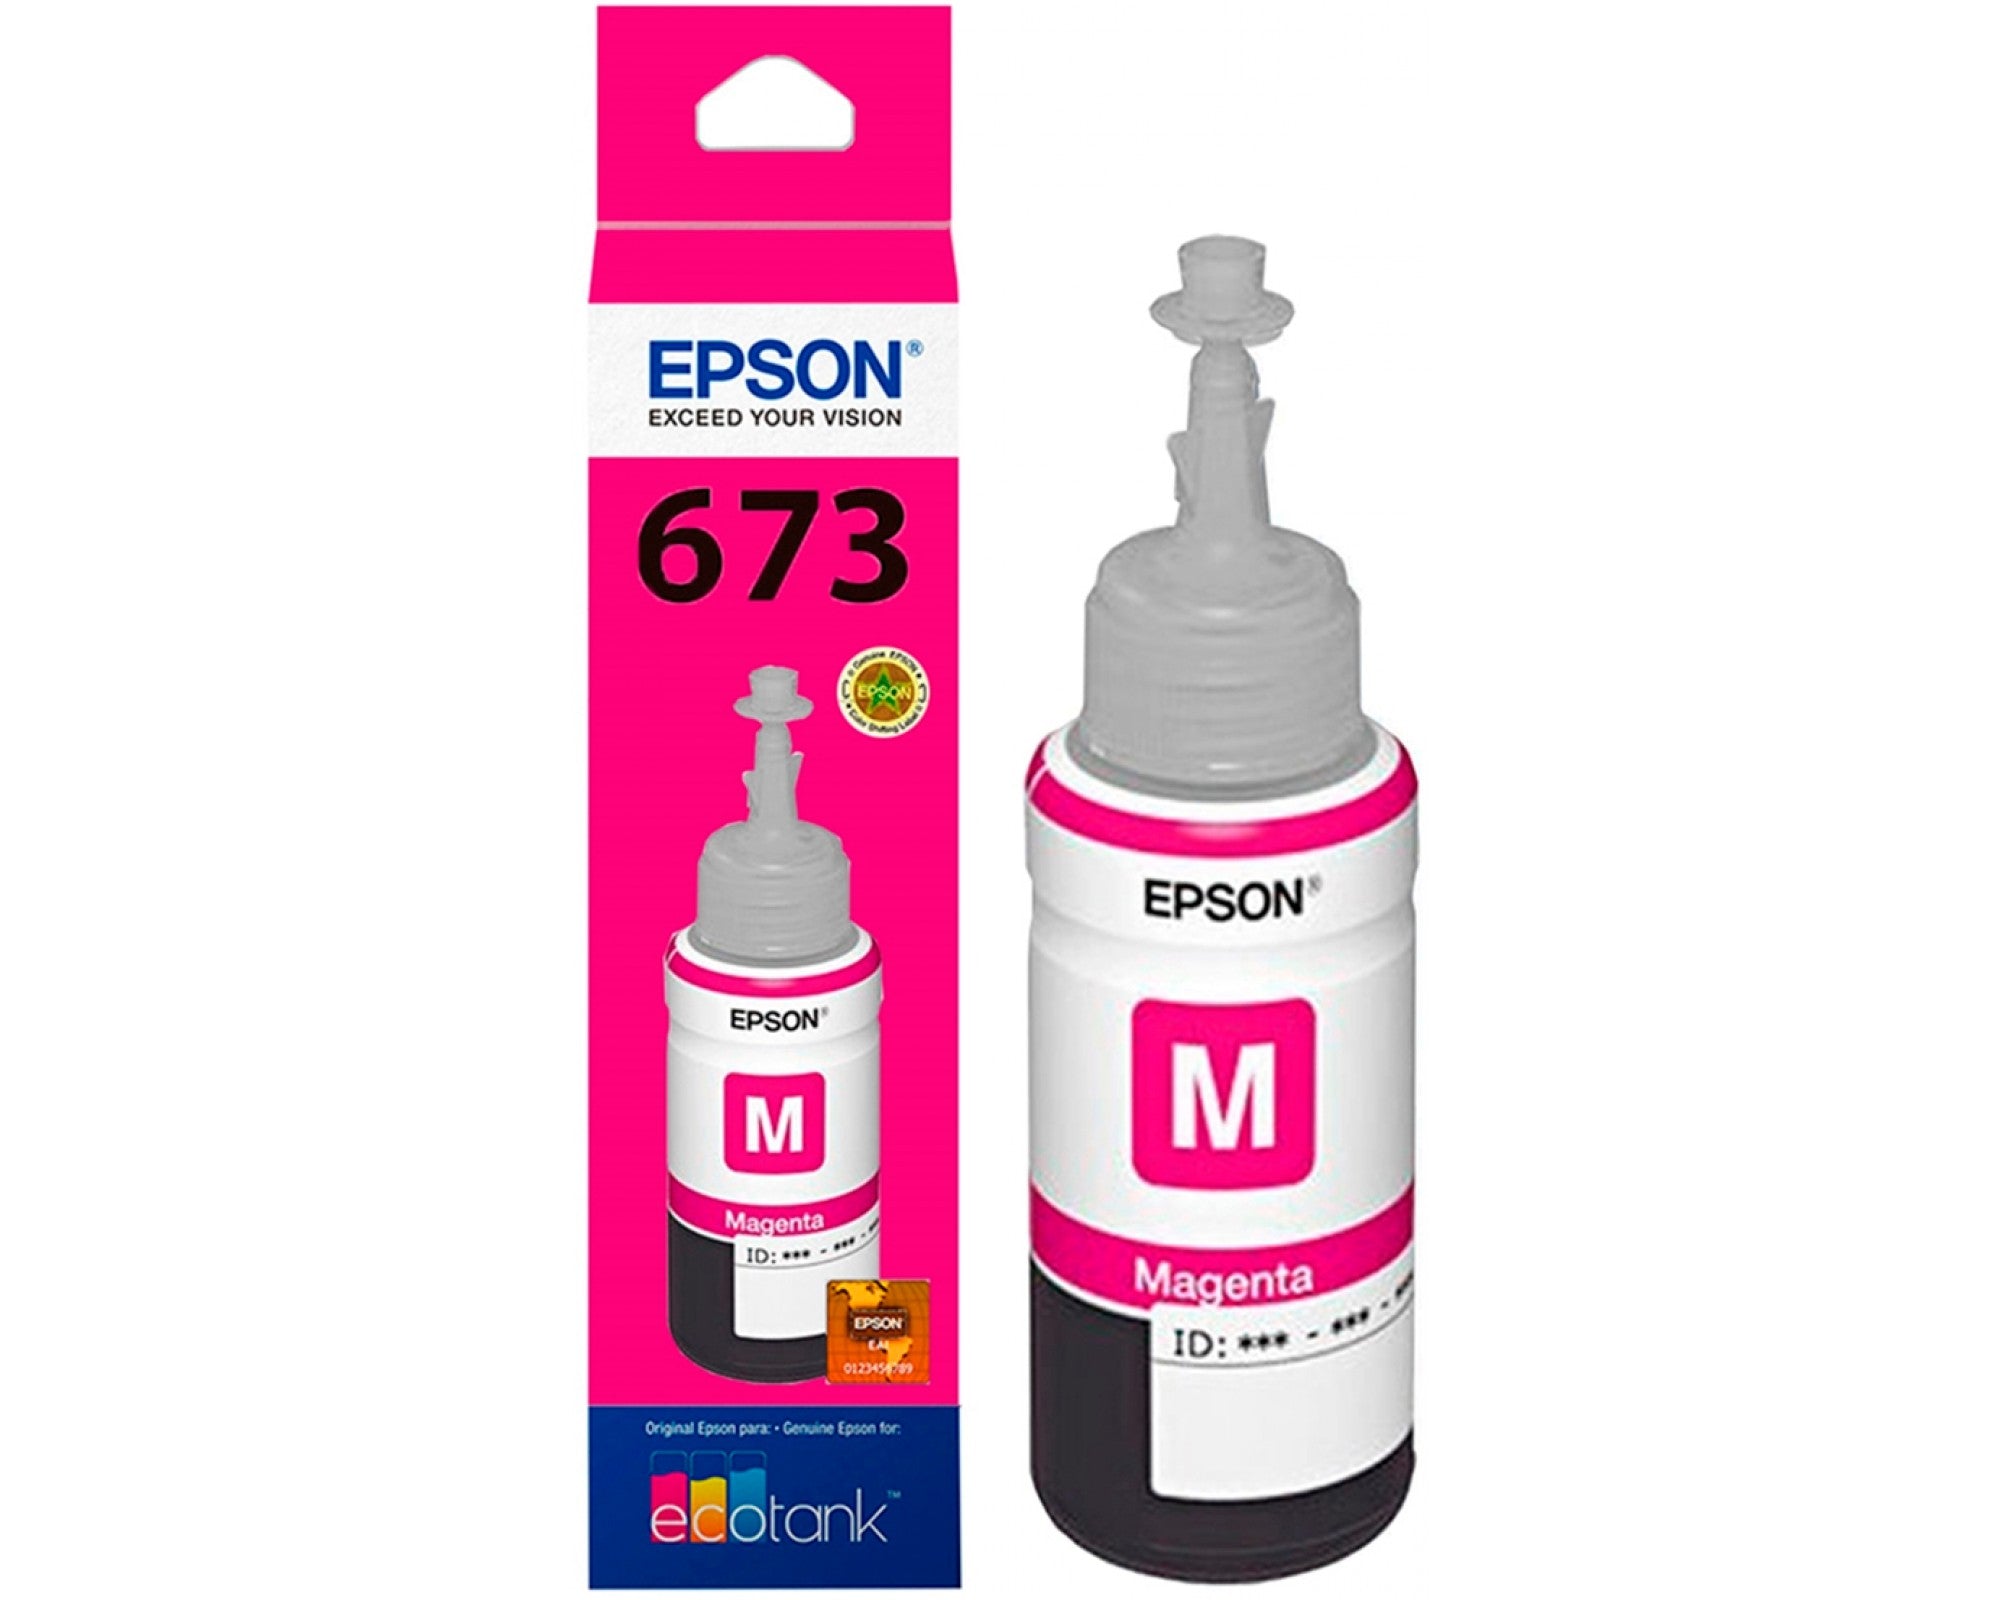 EPSON  Refill Ink  673 for   L800 L805 L810 L850 L1800